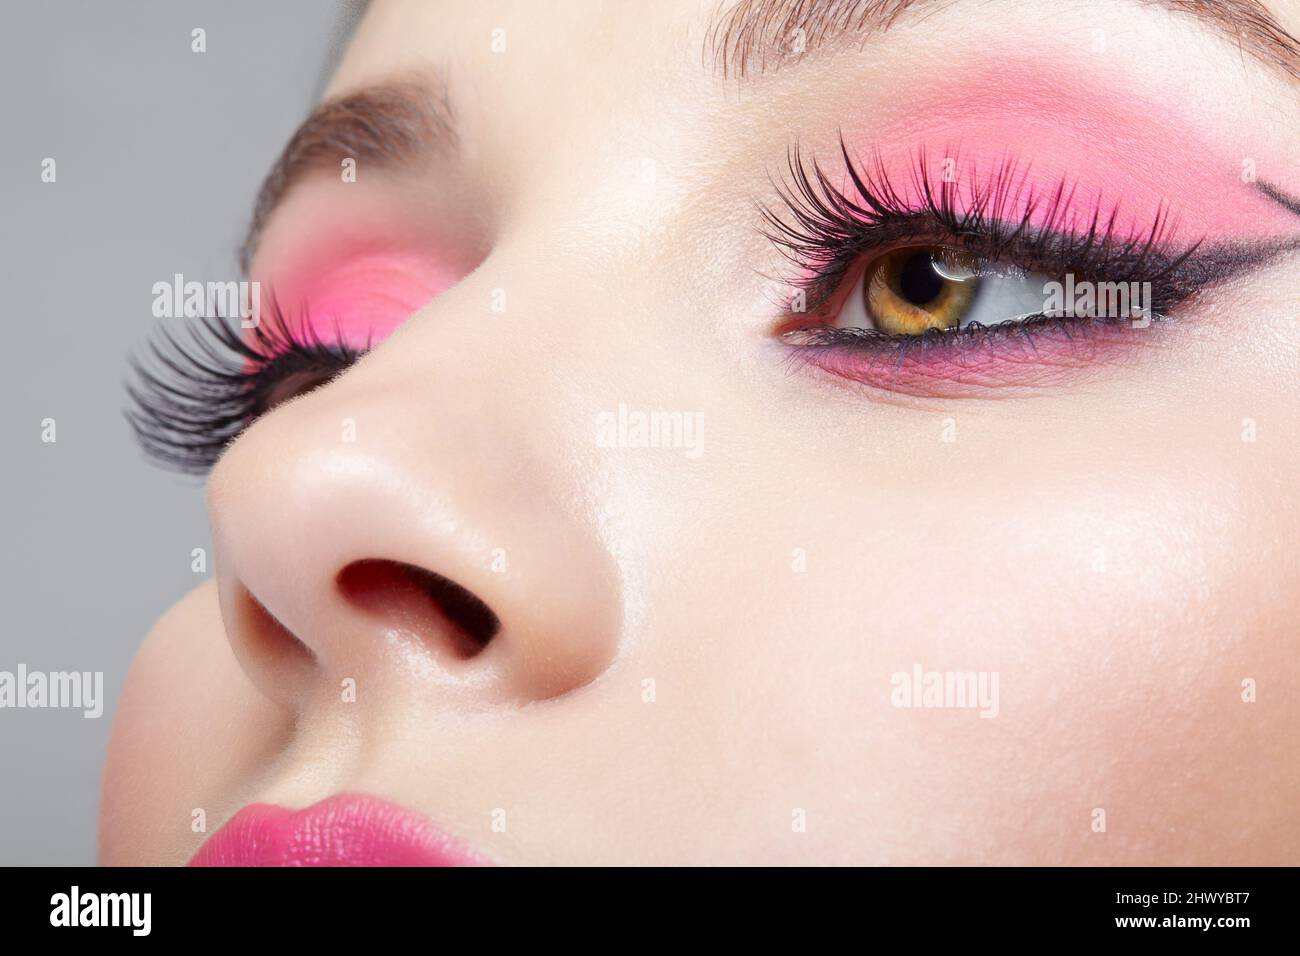 Gros plan sur le visage féminin humain. Femme avec une apparence orientale  et rose yeux et lèvres beauté maquillage Photo Stock - Alamy